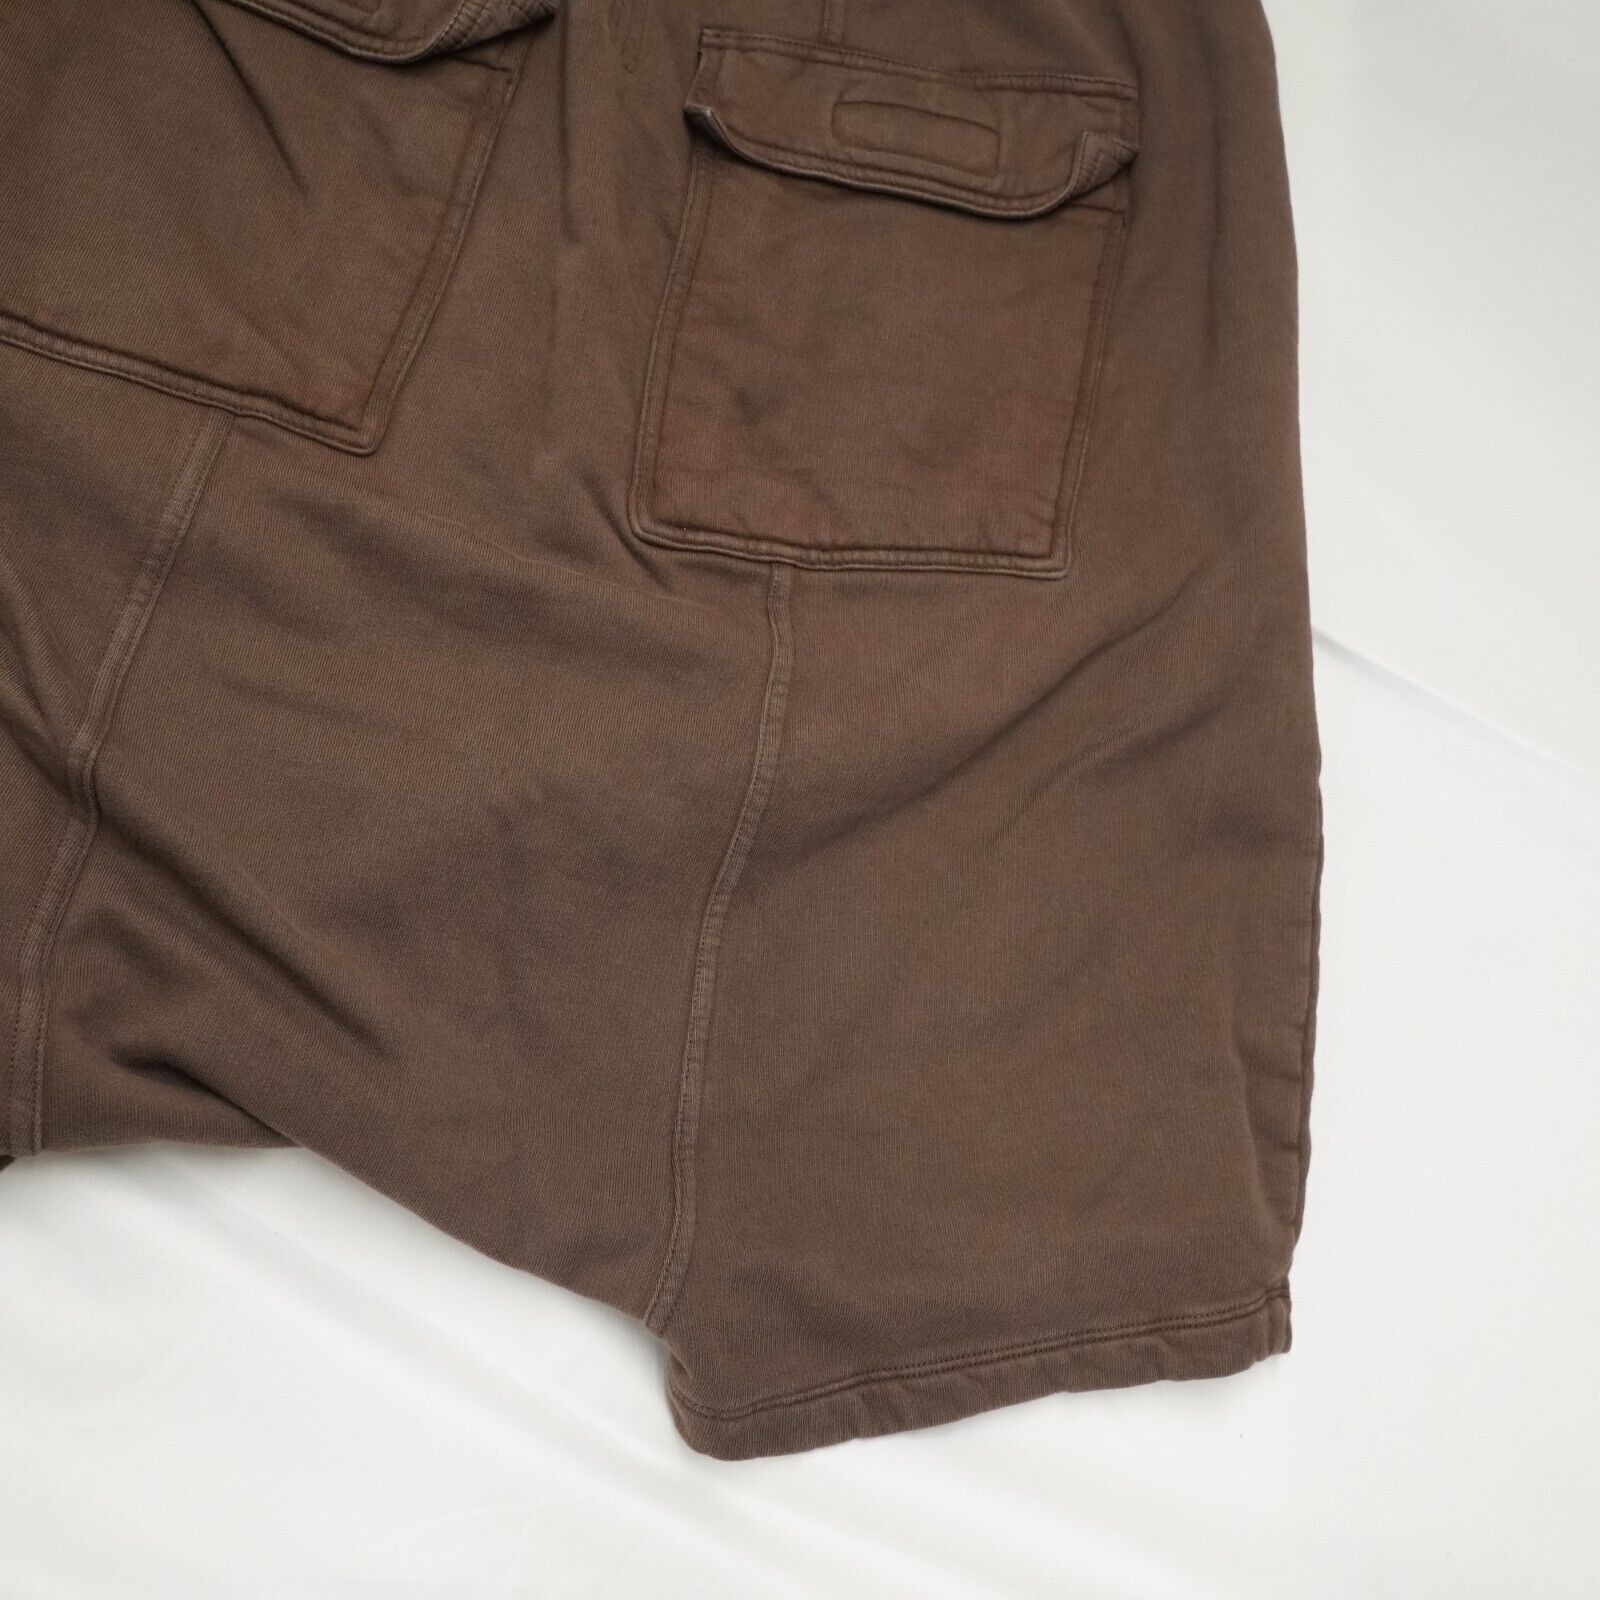 Rick Shorts Drop Crotch Cotton Macassar Brown Large - 17